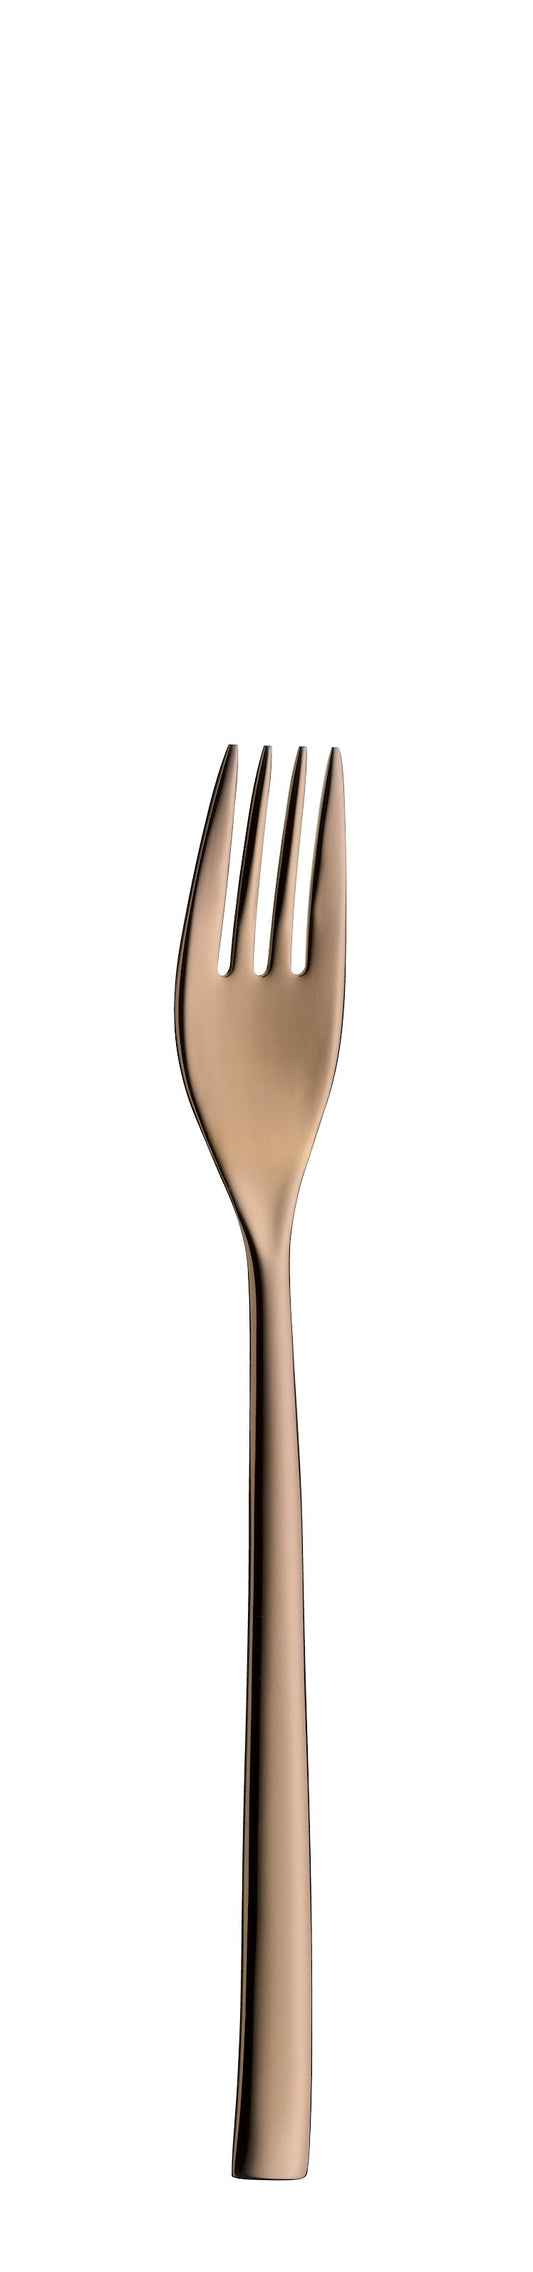 Cake fork TALIA PVD copper 172mm